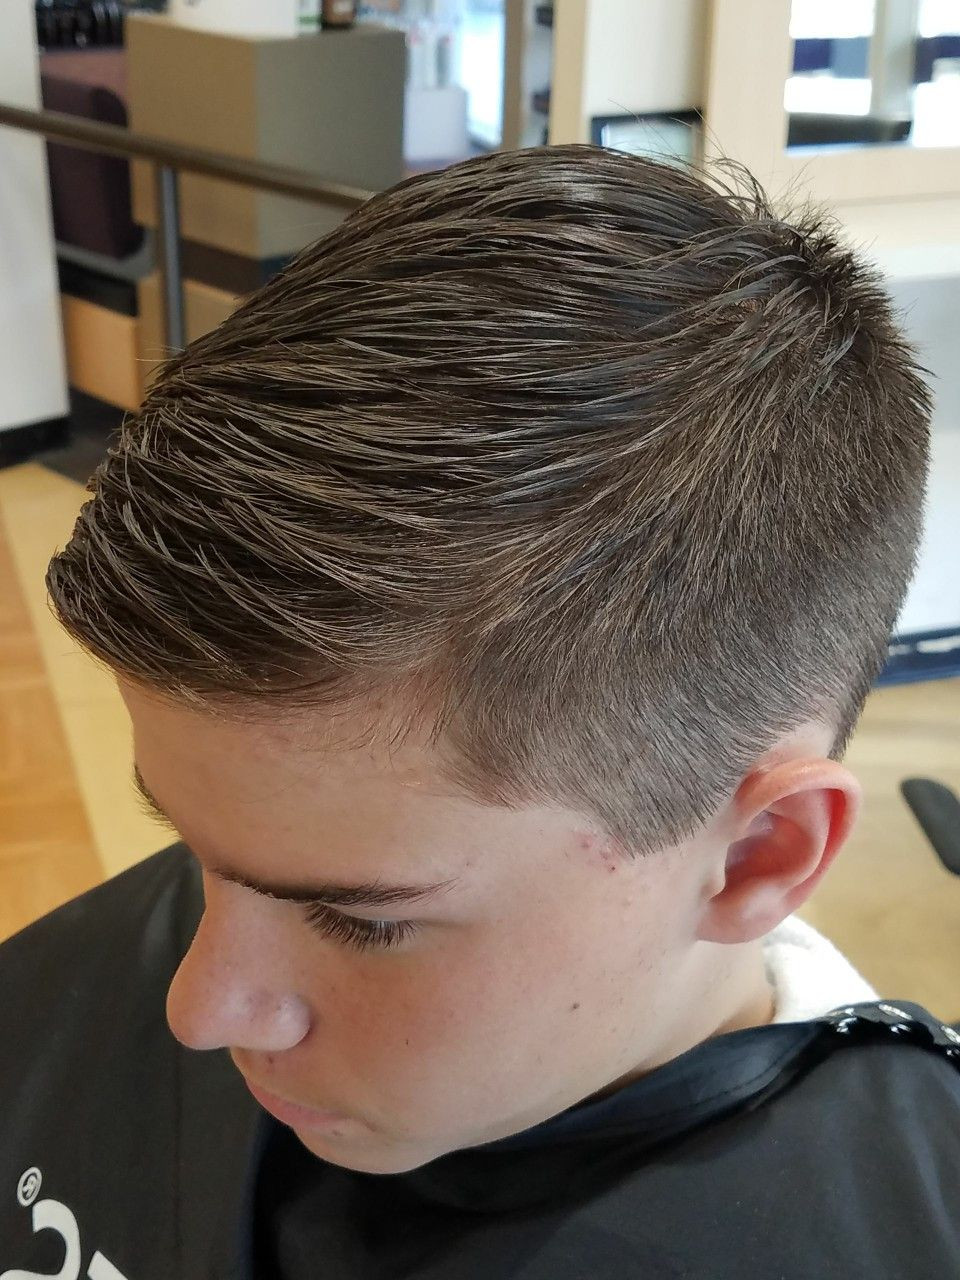 How To Cut A Boys Hair
 Pin on Boys